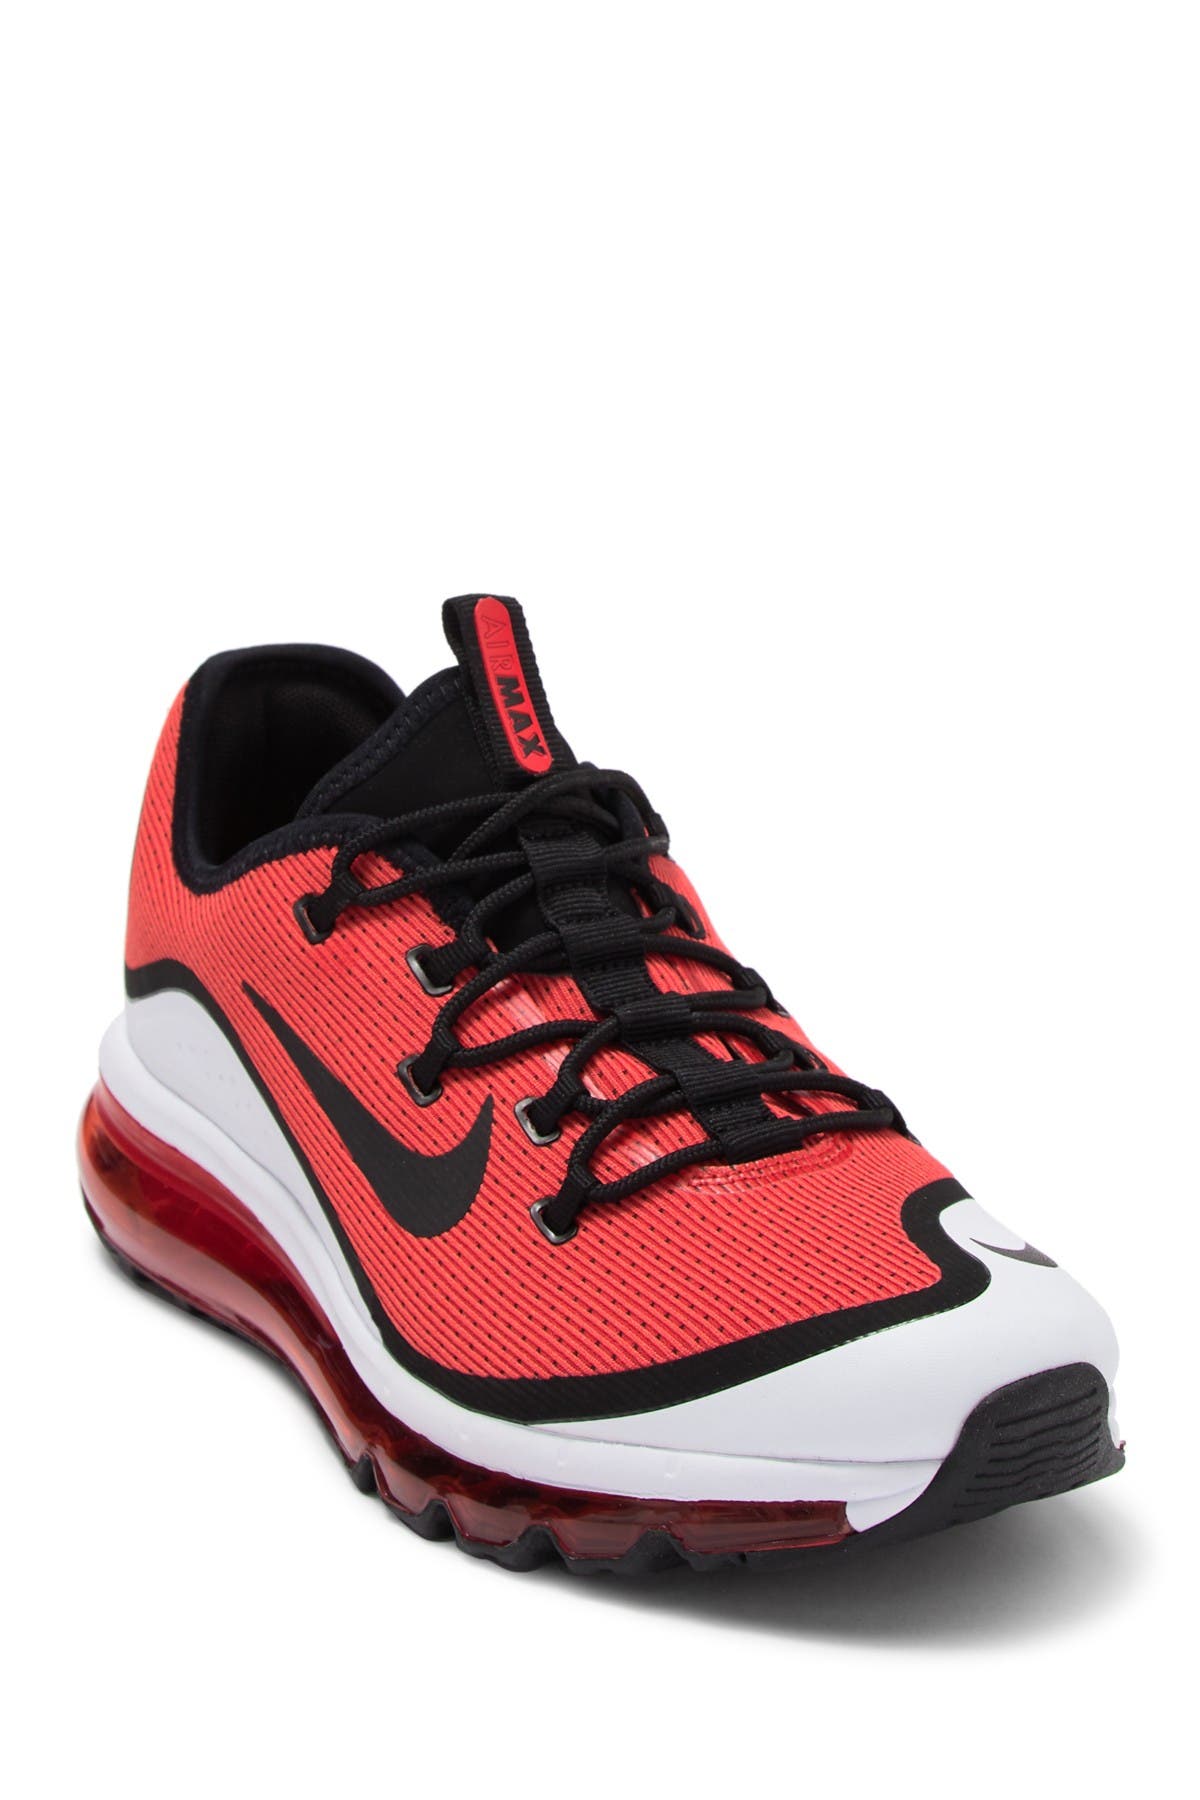 Nike | Air Max More Sneaker | Nordstrom 